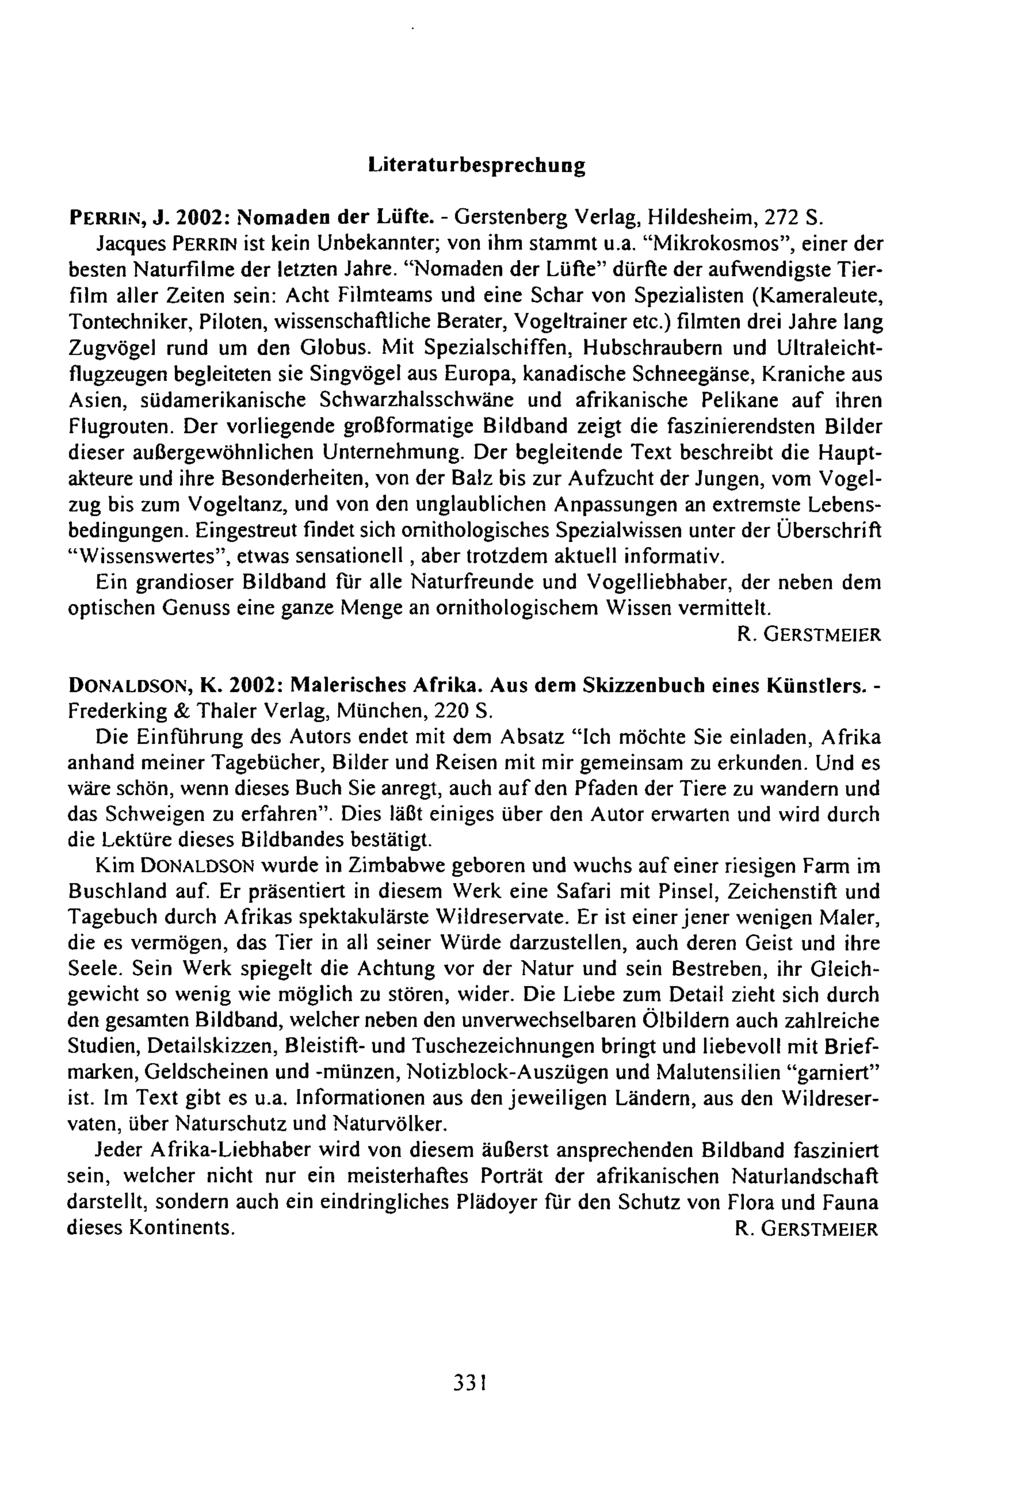 Literaturbesprechung PERRIN, J. 2002: Nomaden der Lüfte. - Gerstenberg Verlag, Hildesheim, 272 S. Jacques PERRIN ist kein Unbekannter; von ihm stammt u.a. "Mikrokosmos", einer der besten Naturfilme der letzten Jahre.